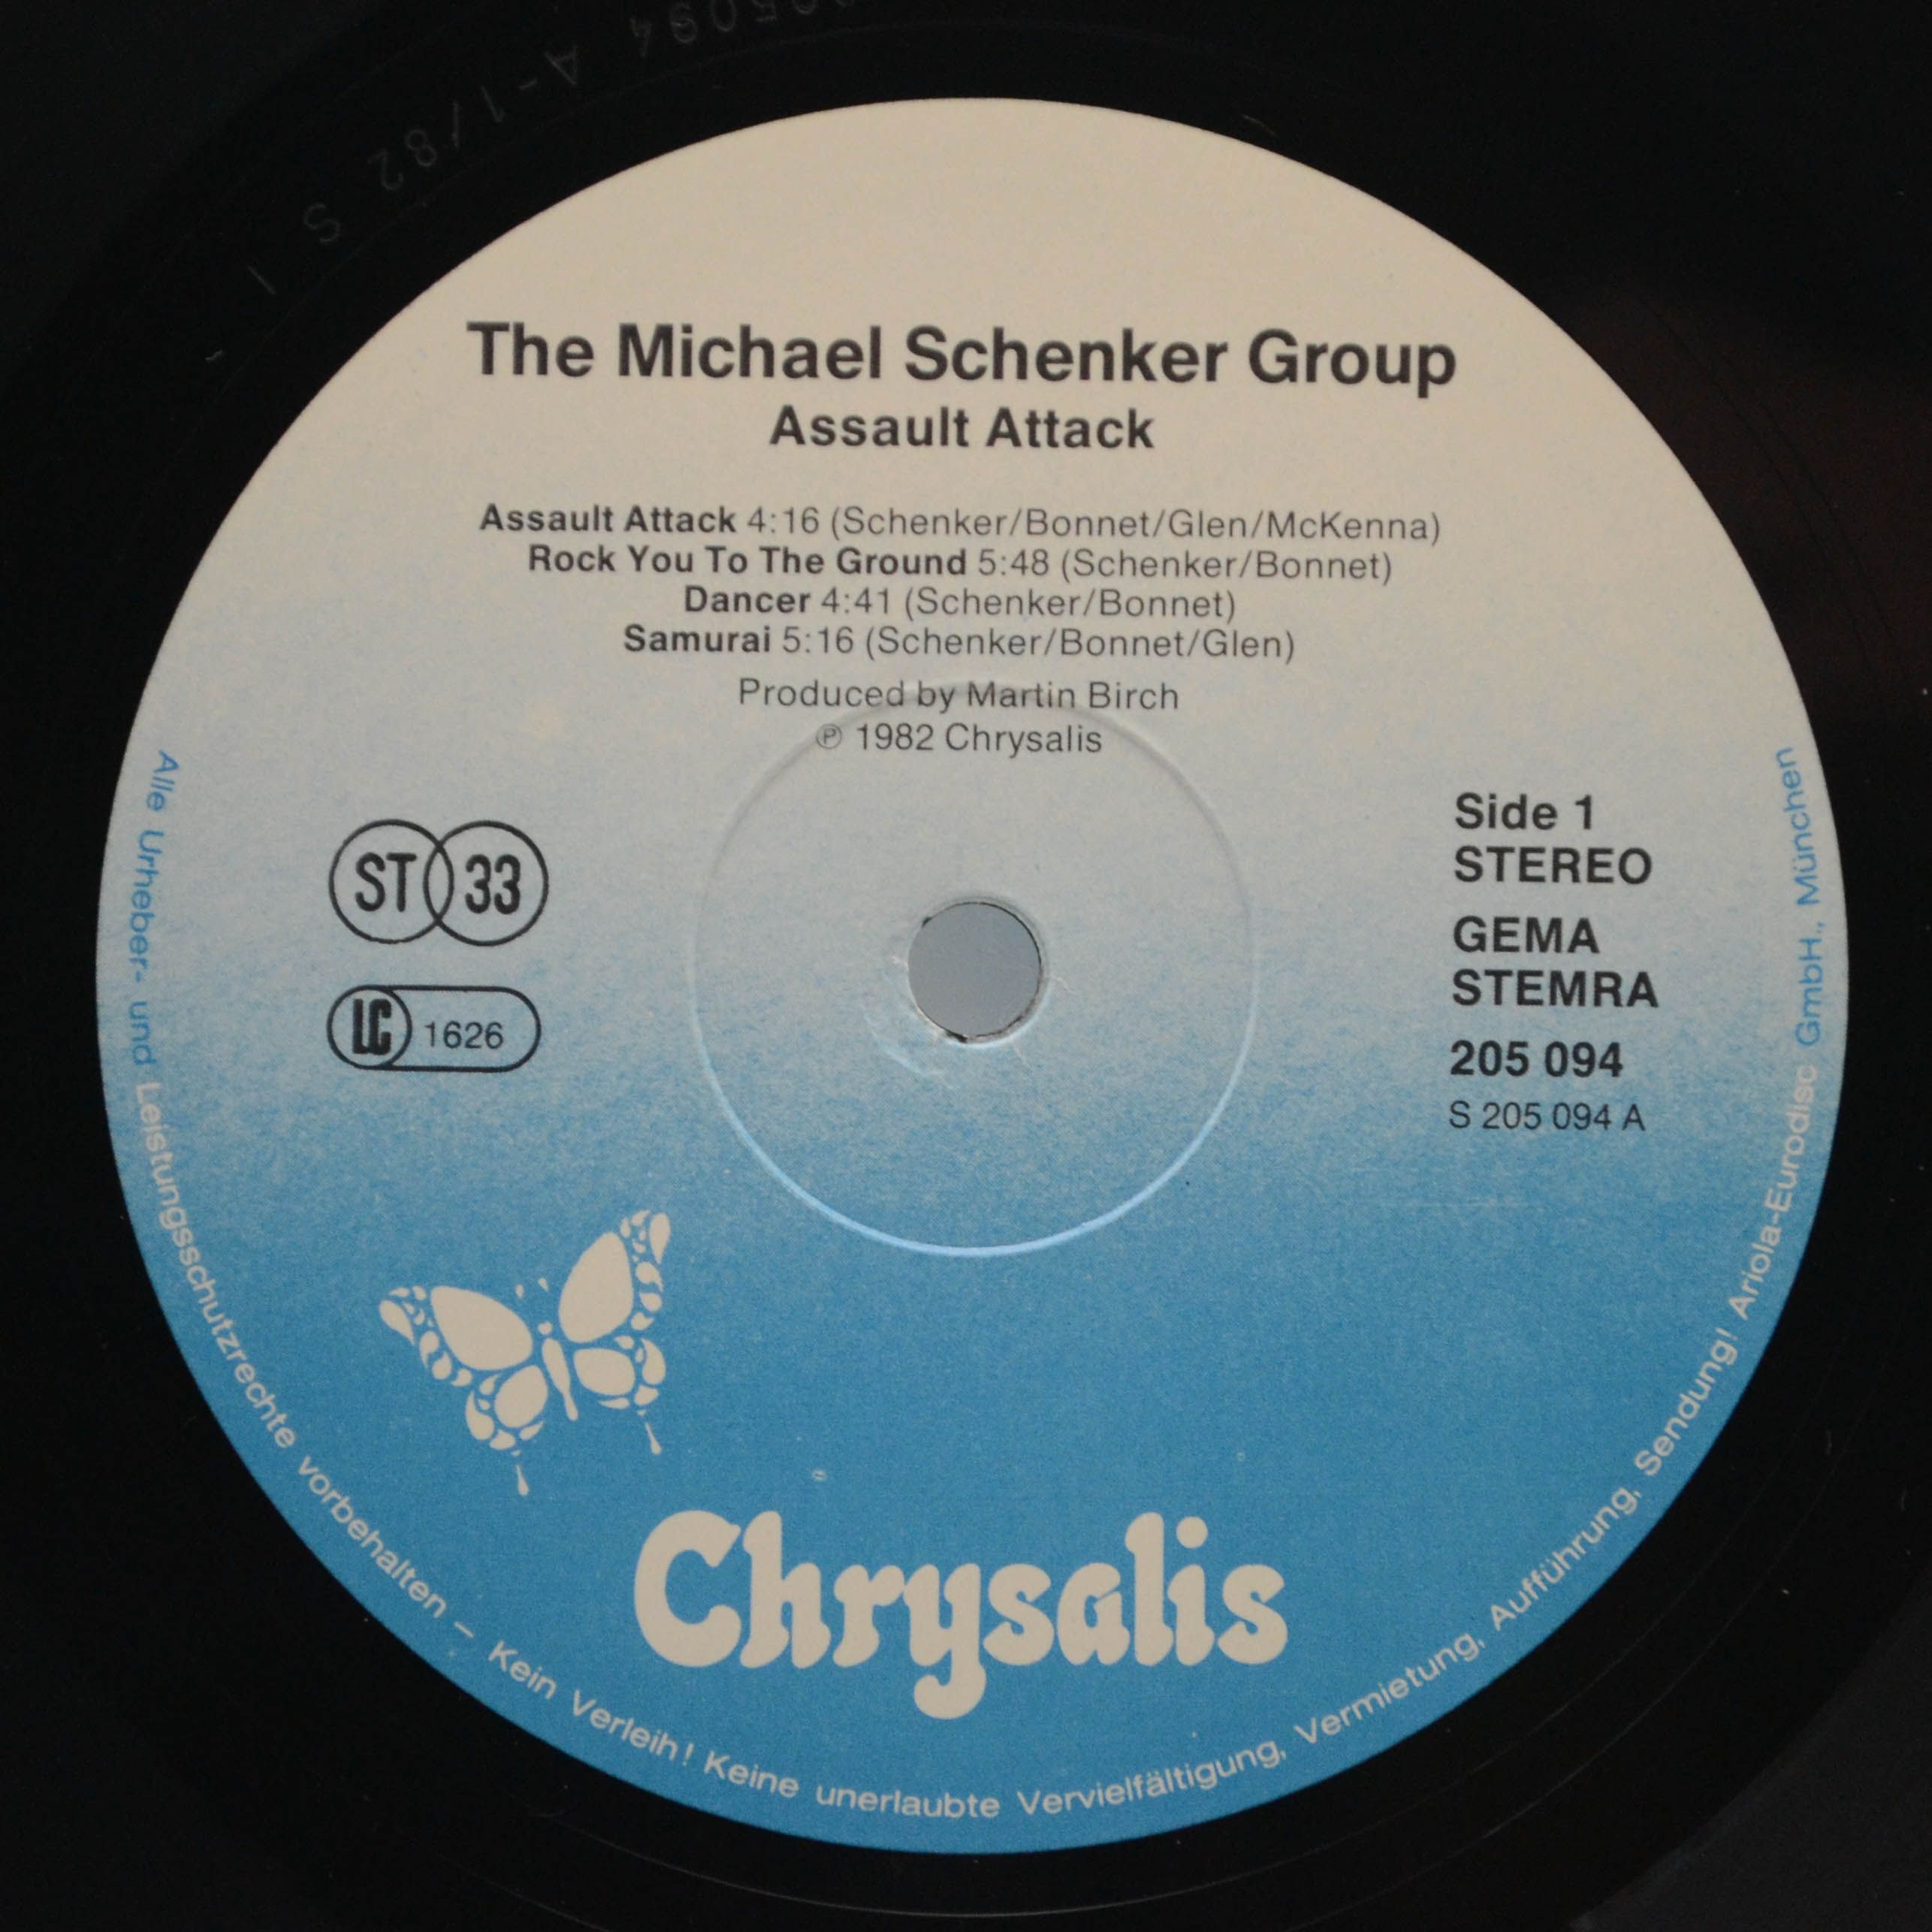 Michael Schenker Group — Assault Attack, 1982